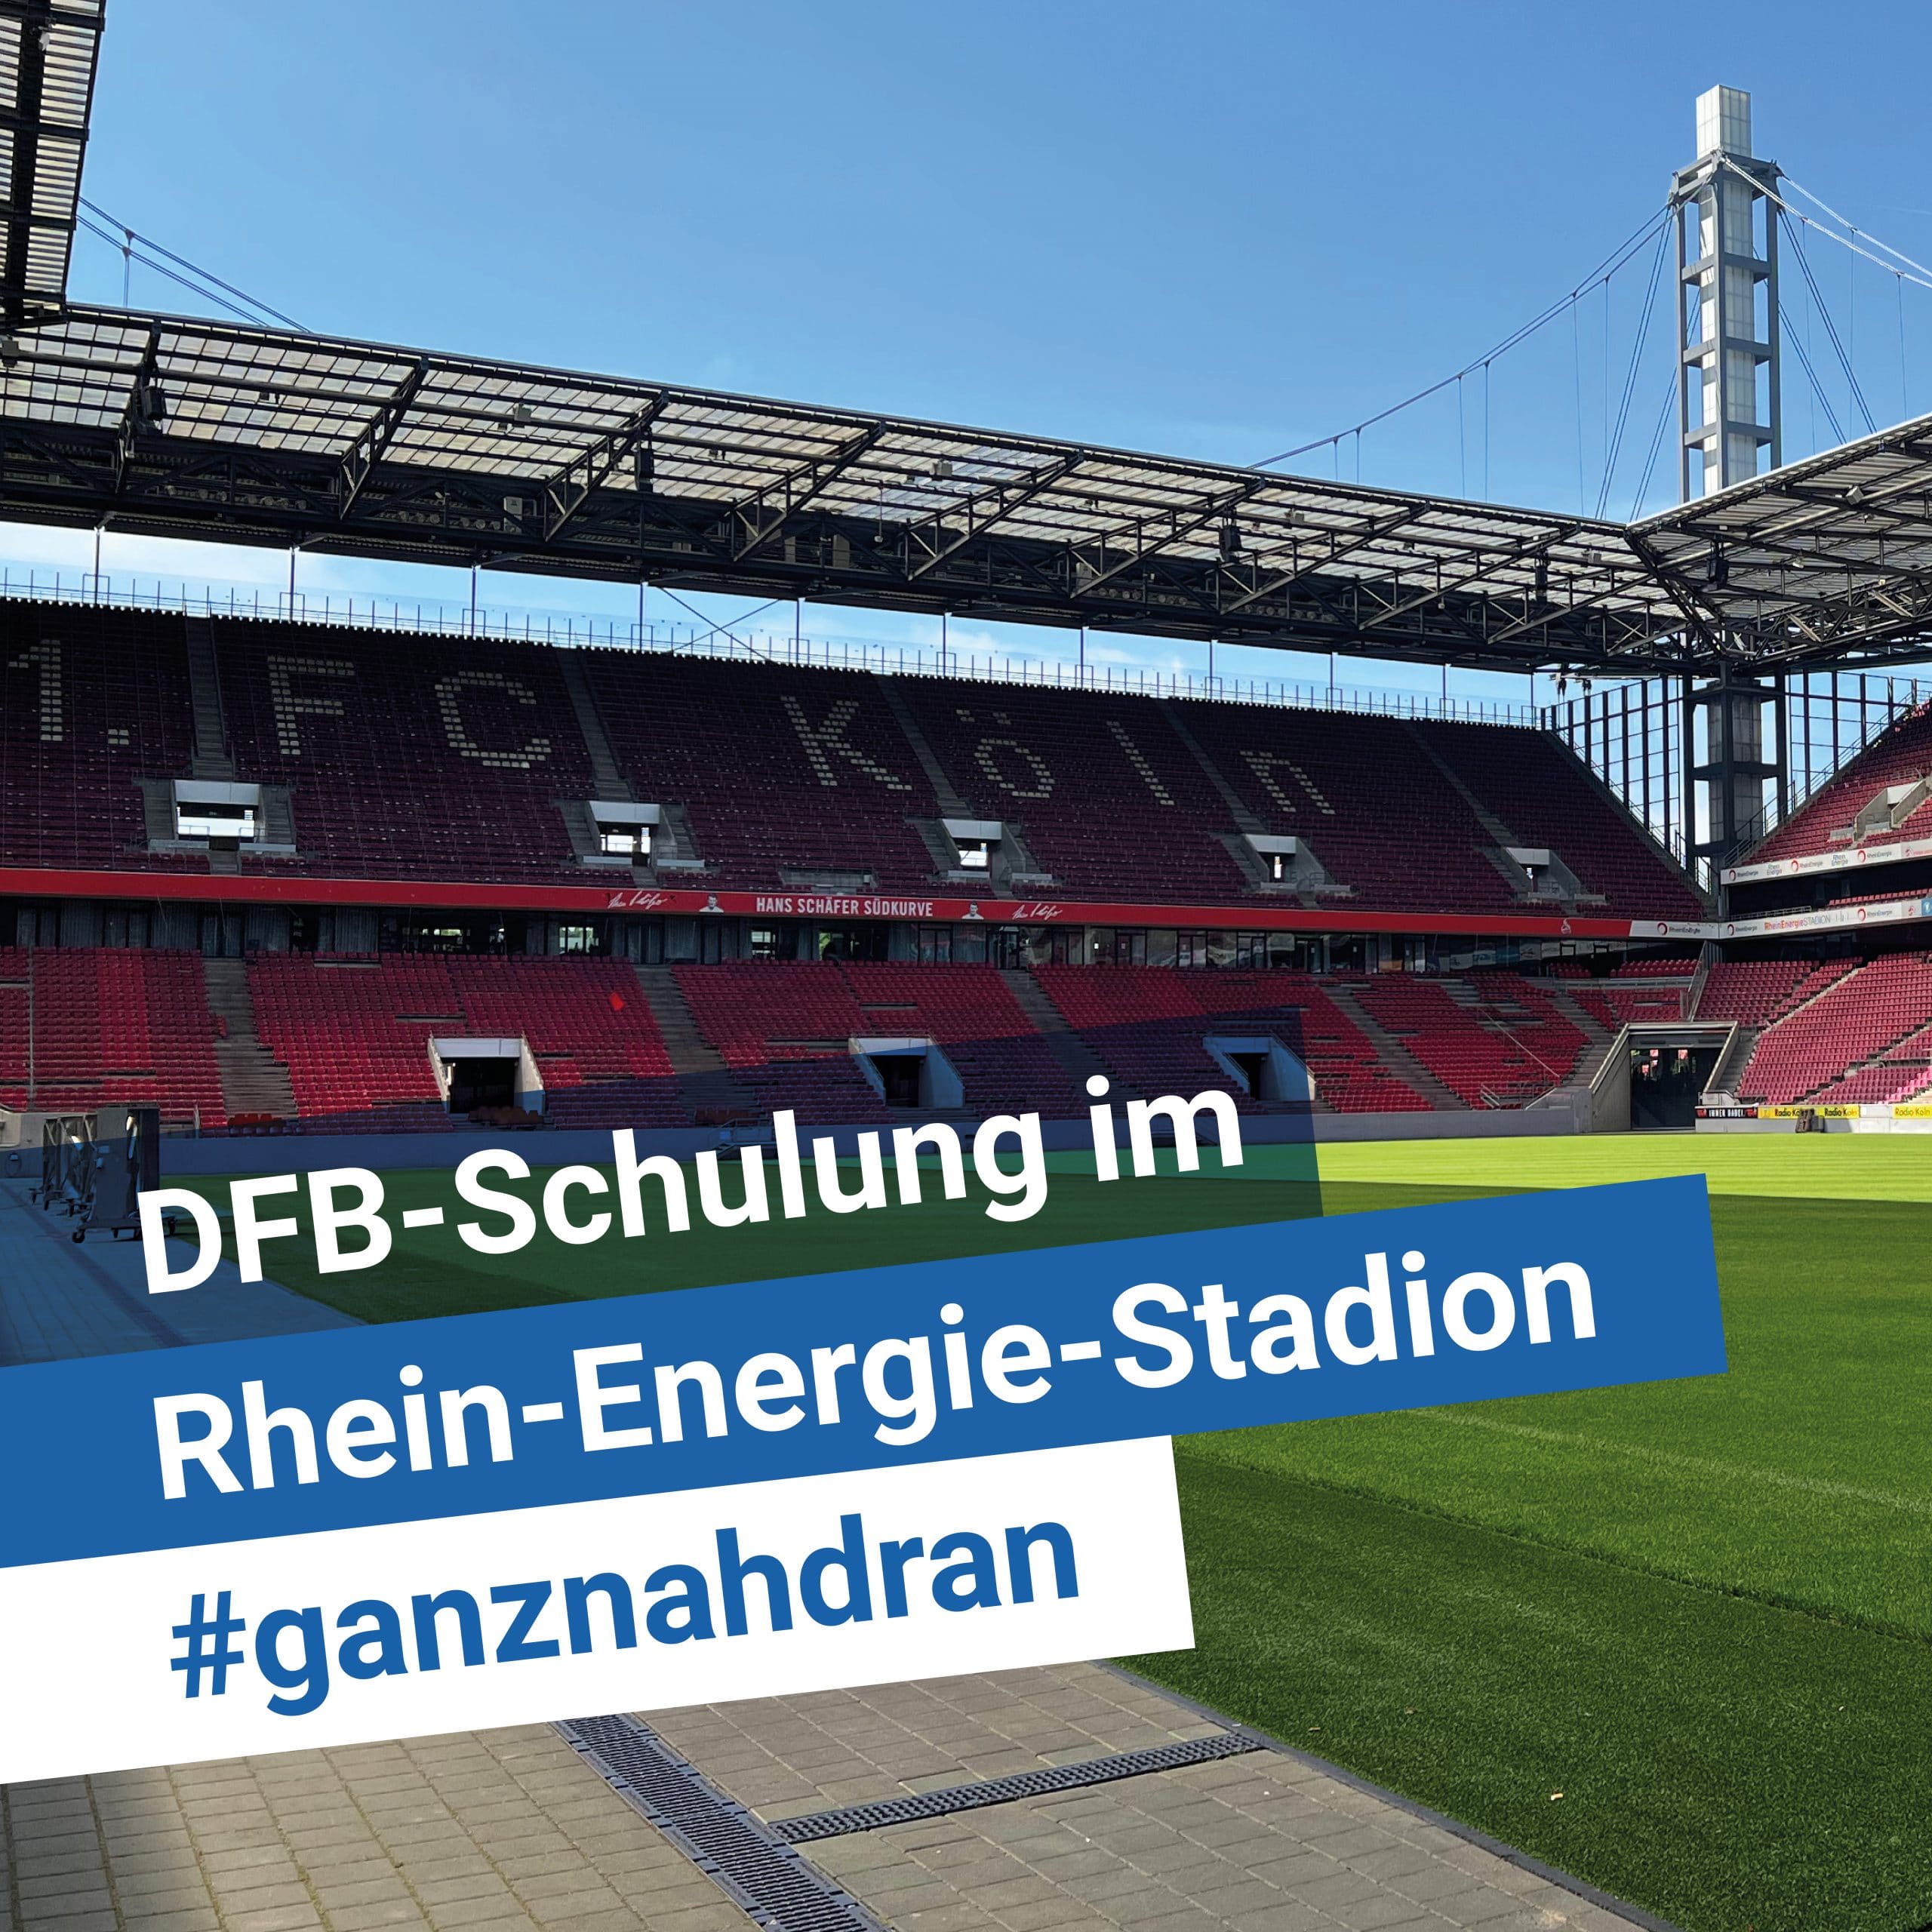 DFB-Schulung im Rhein-Energie-Stadion